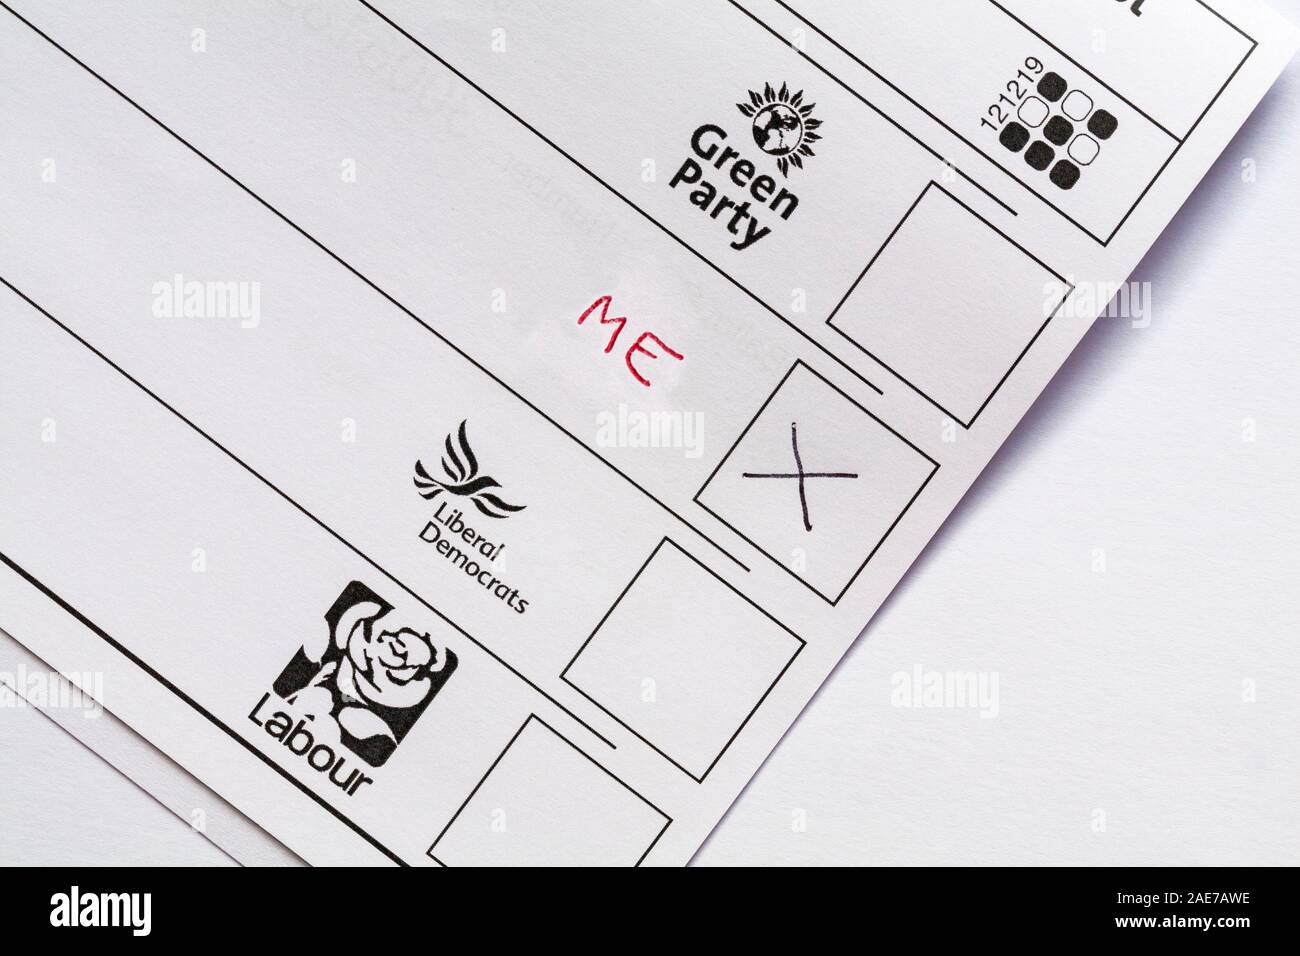 L'embarras de bulletins de vote papier pour les élections parlementaires à venir en 2019 Royaume-Uni - vote gaspillé Banque D'Images